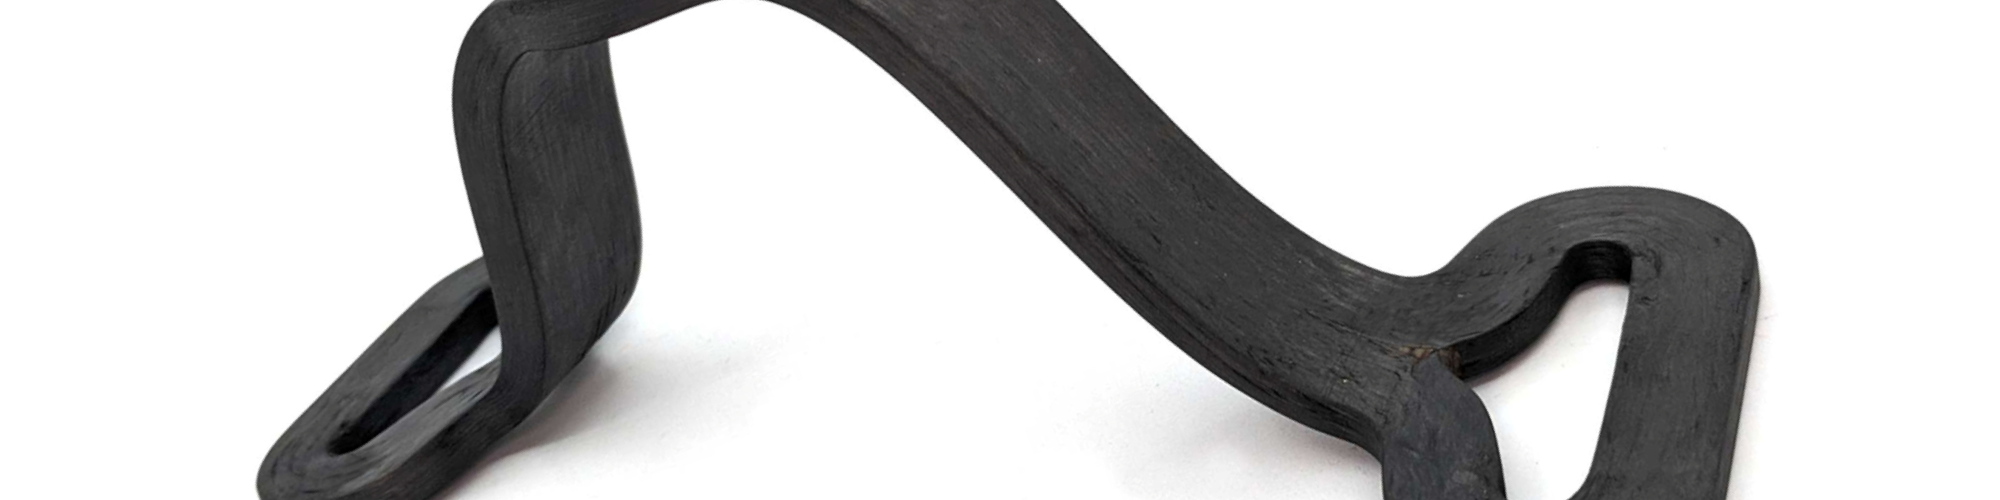 Mantis Composites carbon fiber 3D printed part